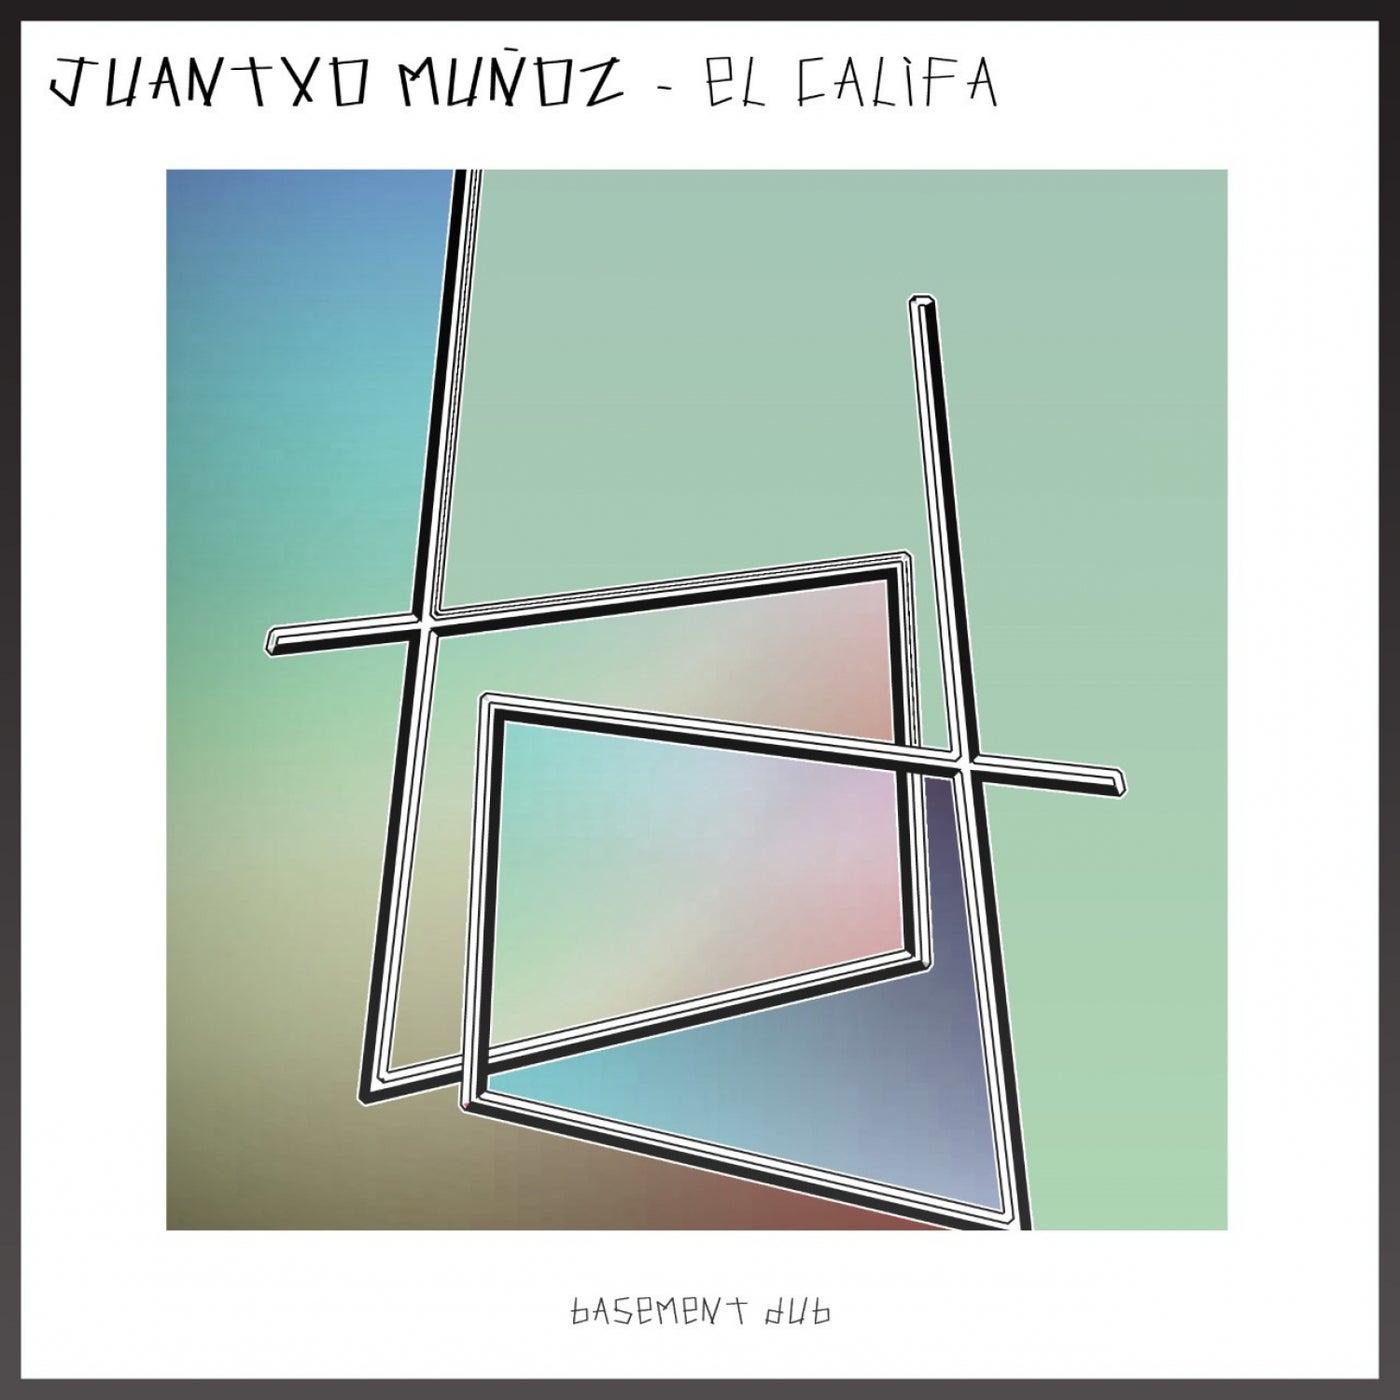 Juantxo Munoz – El Califa [BSD046]